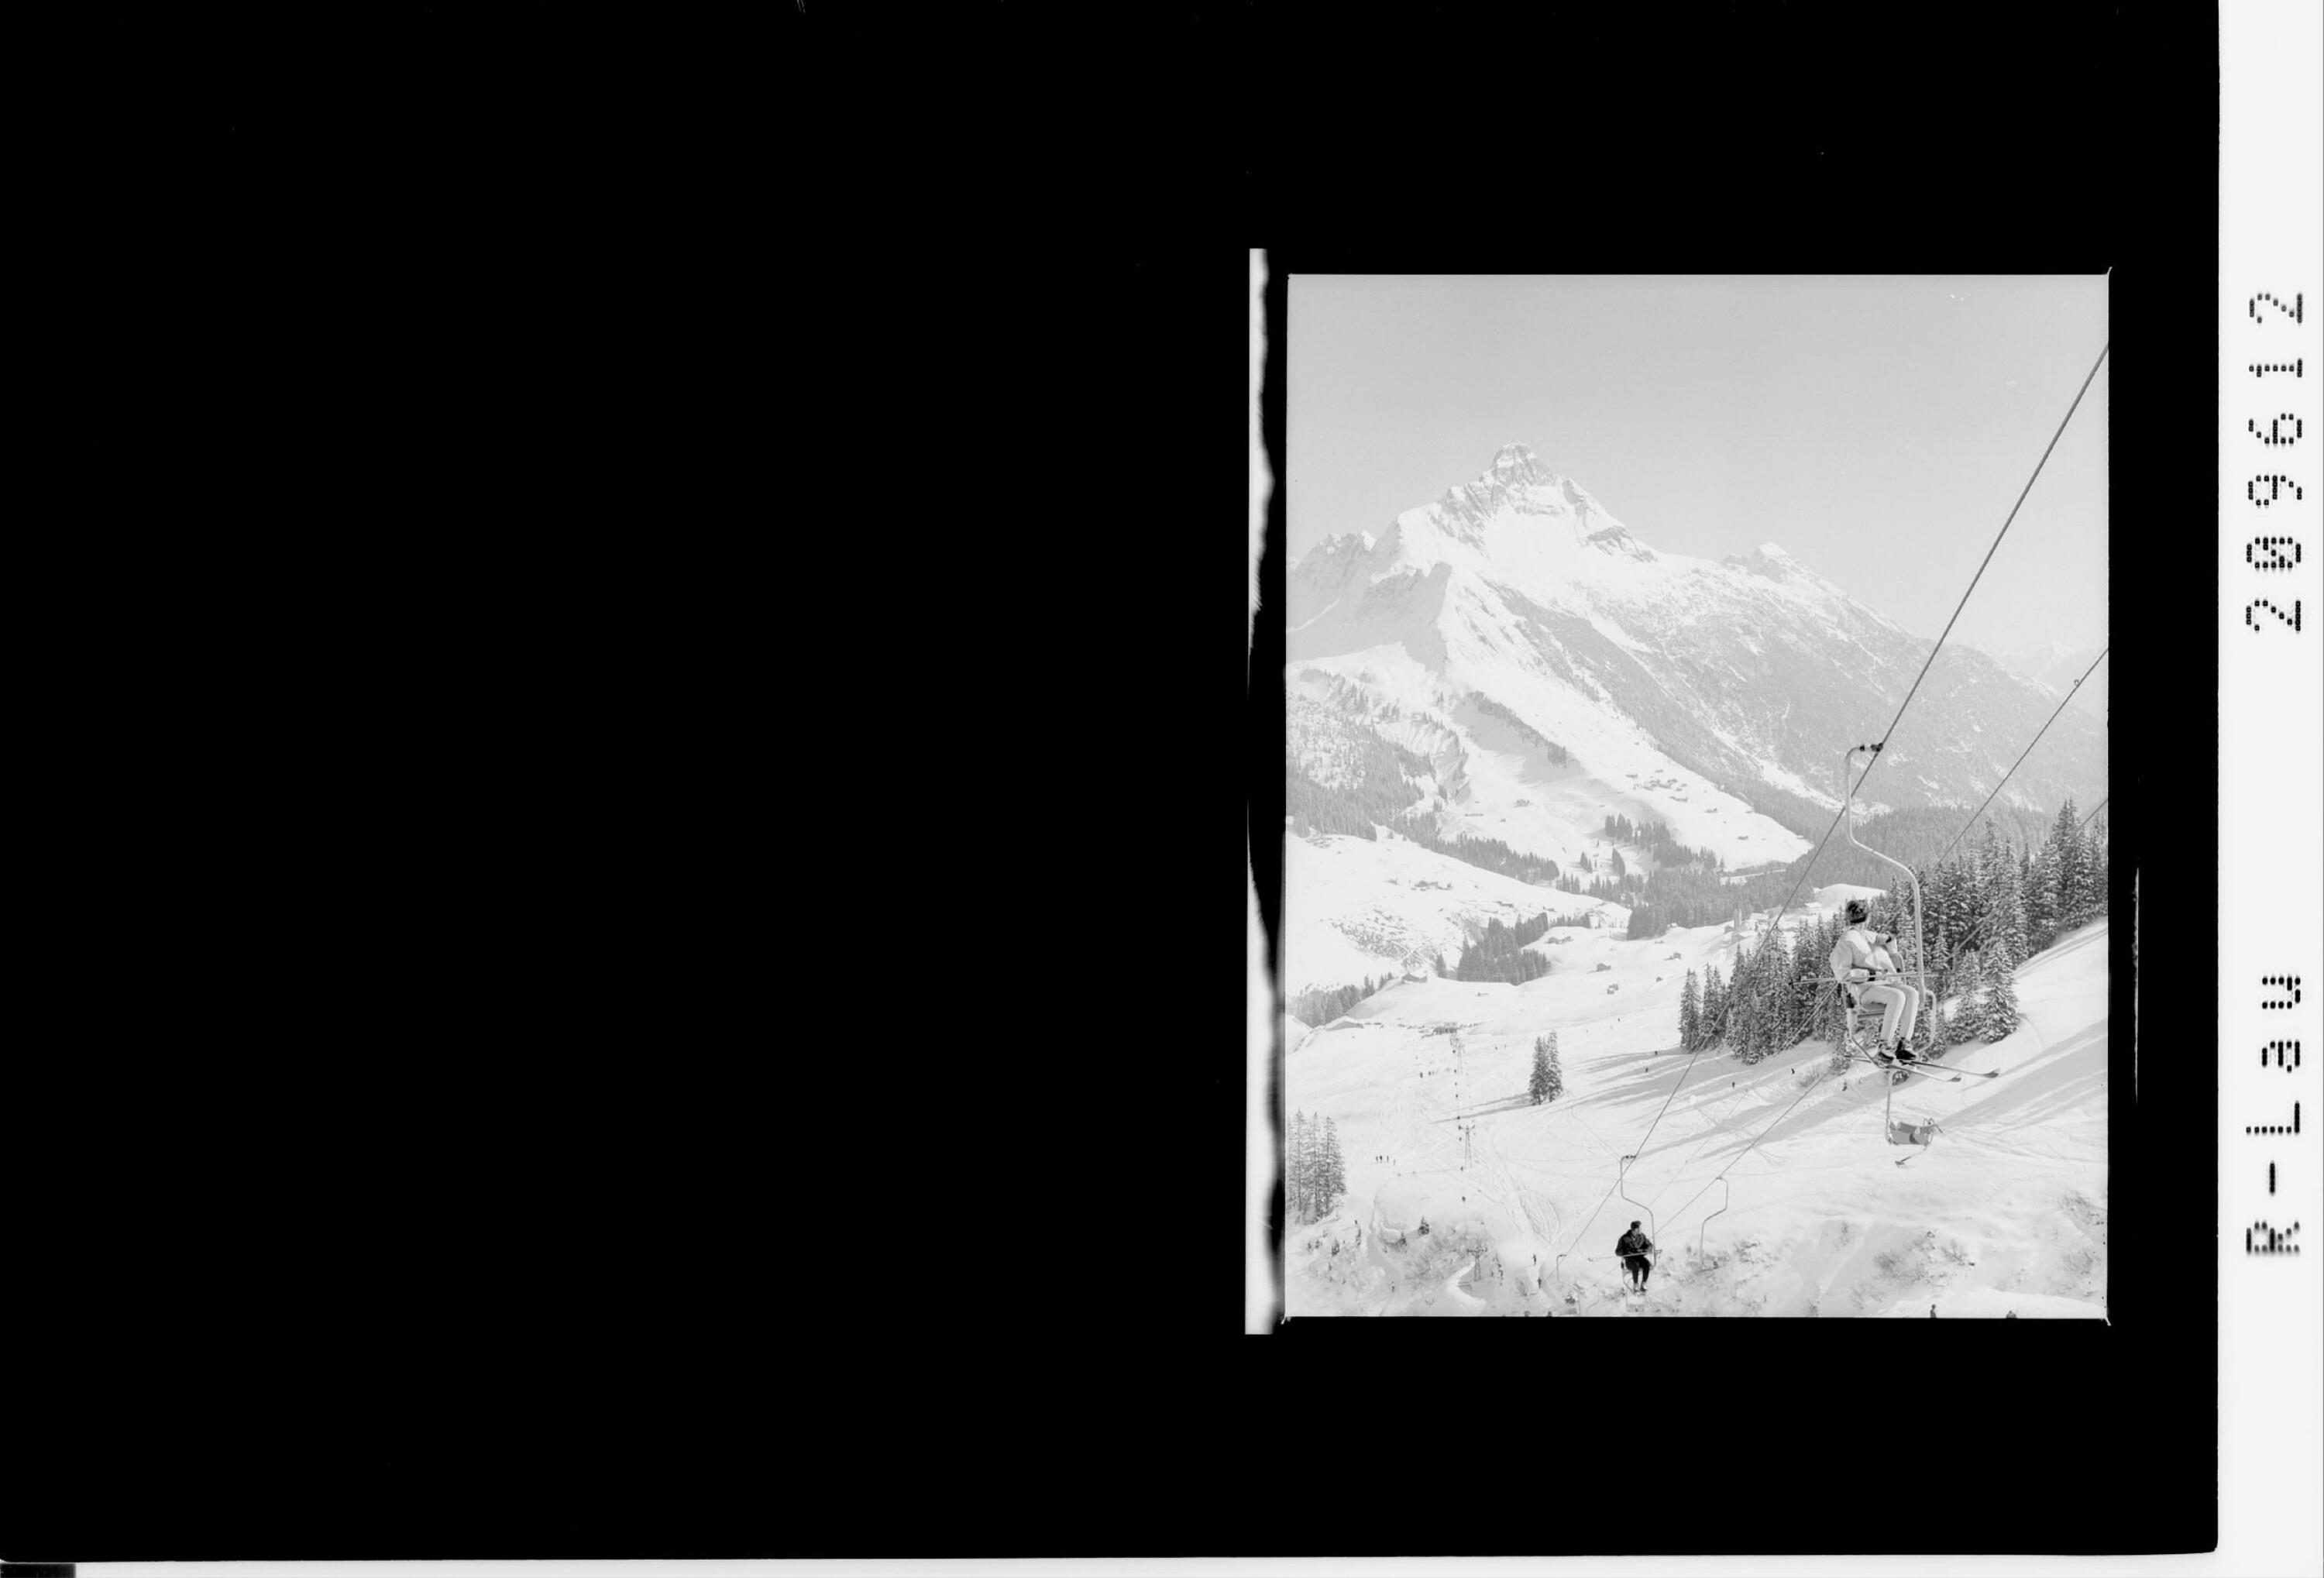 Warth am Arlberg 1500 m, Sessellift Steffisalpe 1950 m></div>


    <hr>
    <div class=